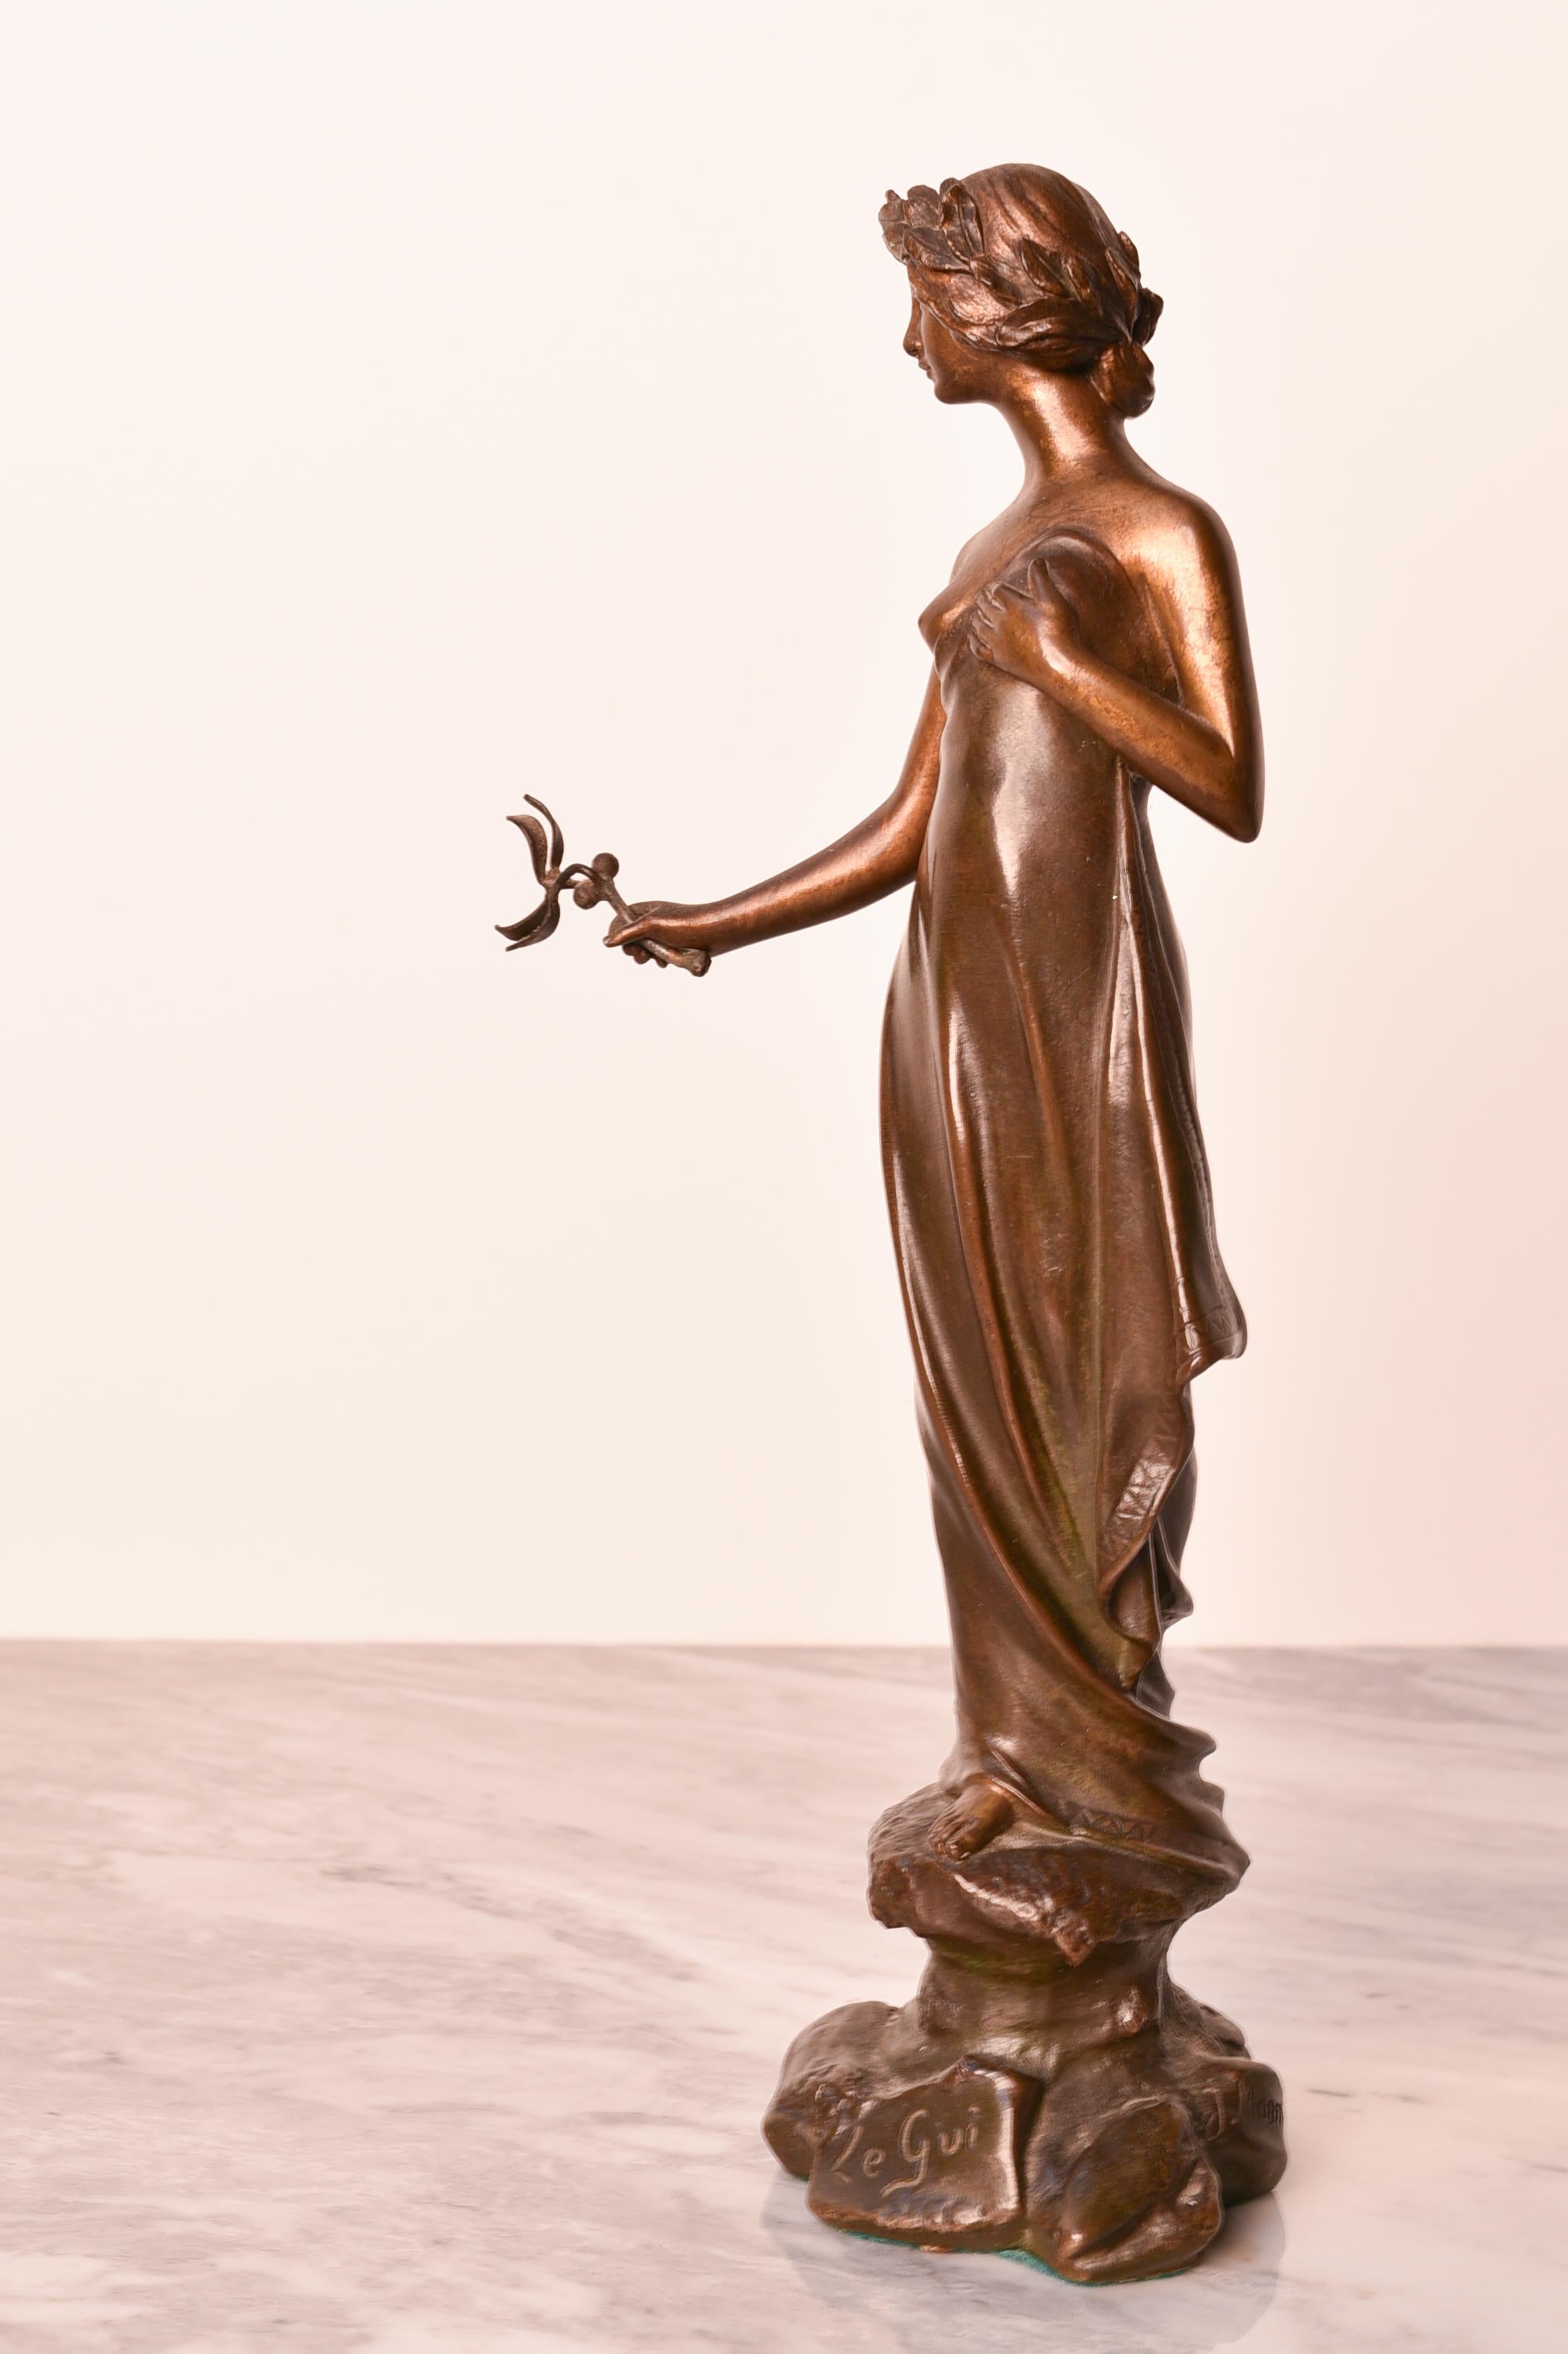 Bronzestatue im Jugendstil, signiert vom Künstler Joan Fortuny Monmany (1866-1918). Die Statue trägt außerdem eine Gießereimarke und auch der Name des Kunstwerks (Le Gui = die Misletoe) wurde in die Bronze gegossen. 